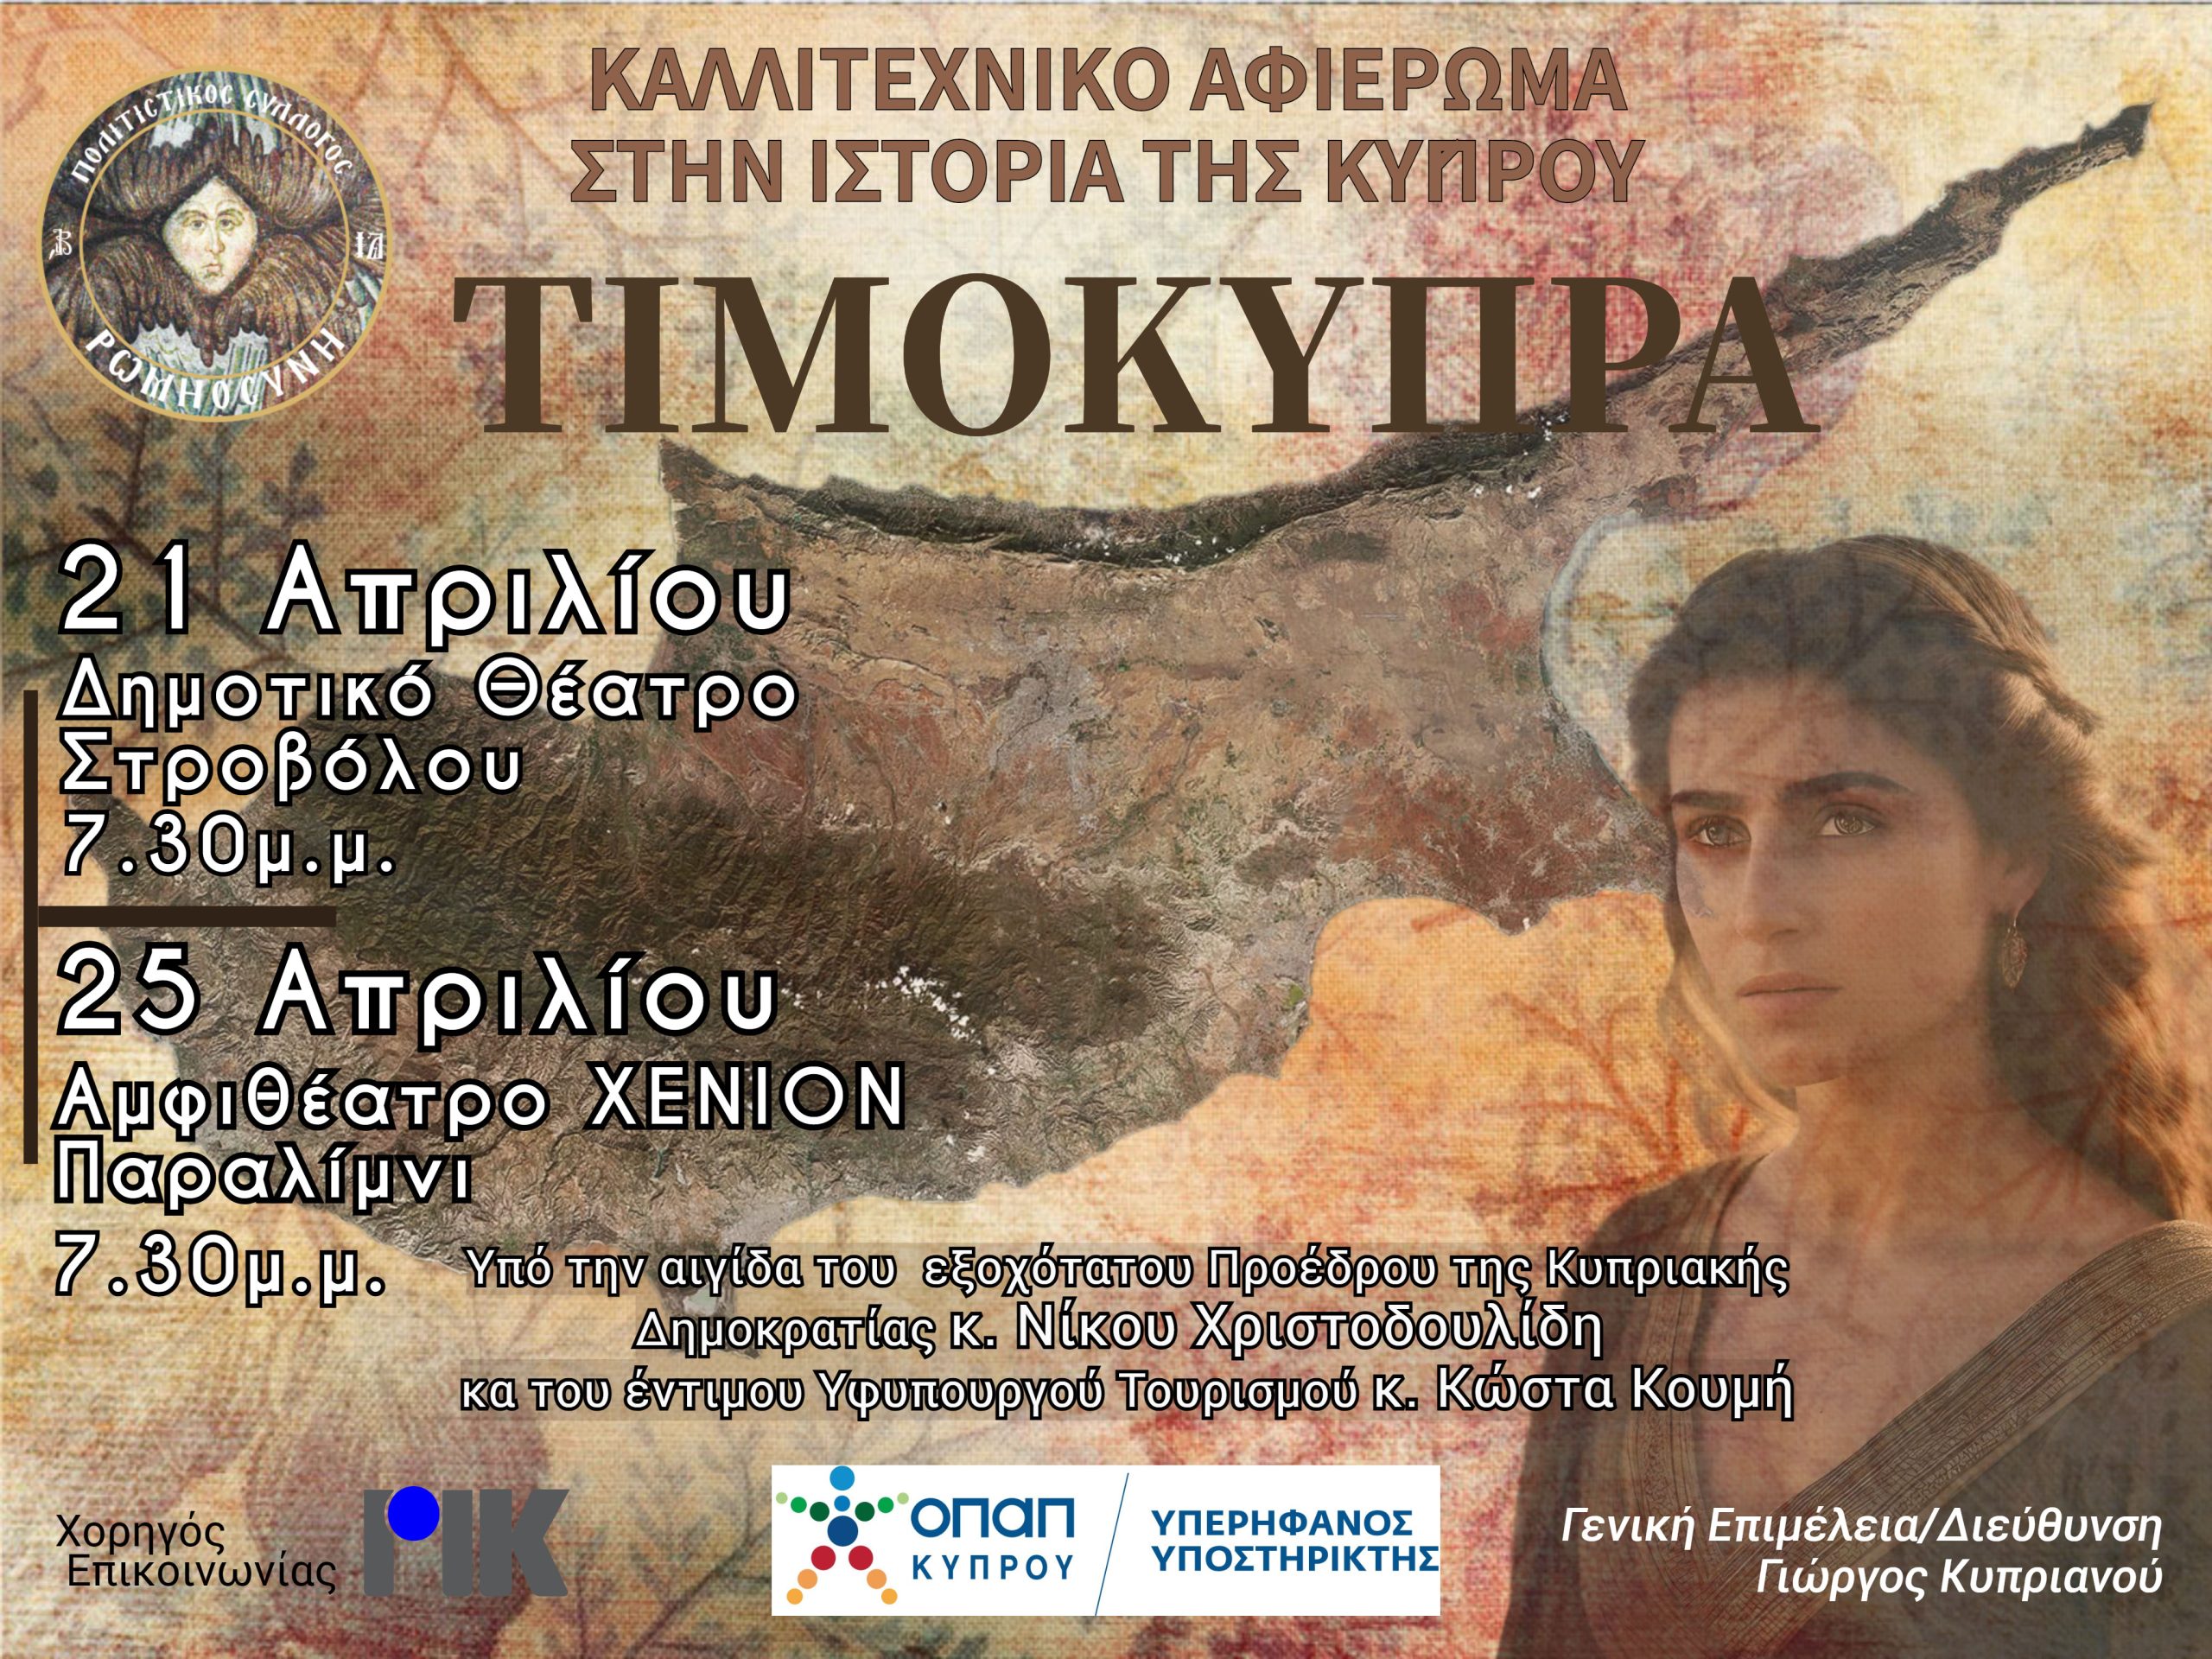 Ο Πολιτιστικός Σύλλογος ΡΩΜΗΟΣΥΝΗ ανεβάζει το καλλιτεχνικό αφιέρωμα στην ιστορία της Κύπρου “ΤΙΜΟΚΥΠΡΑ”